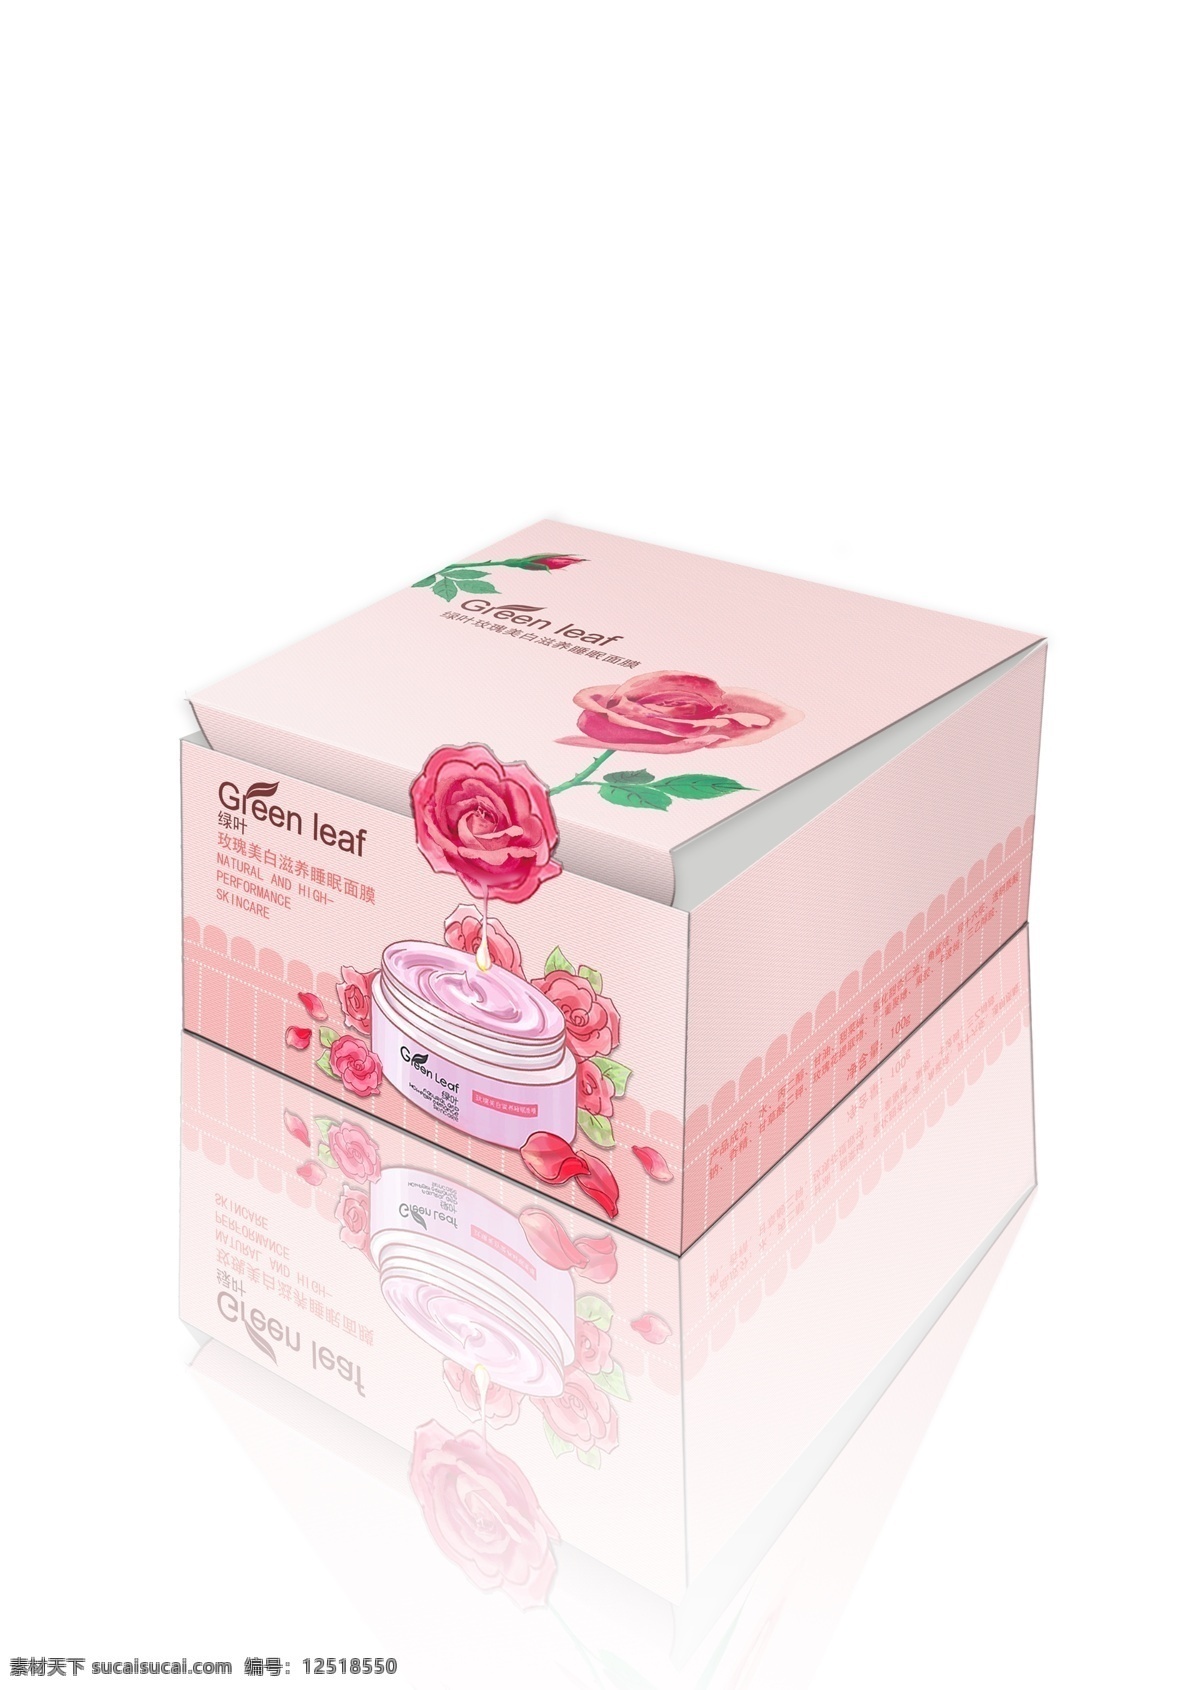 玫瑰 面膜 盒子 立体 展示 图 粉色 化妆品 展示图 原创设计 原创包装设计